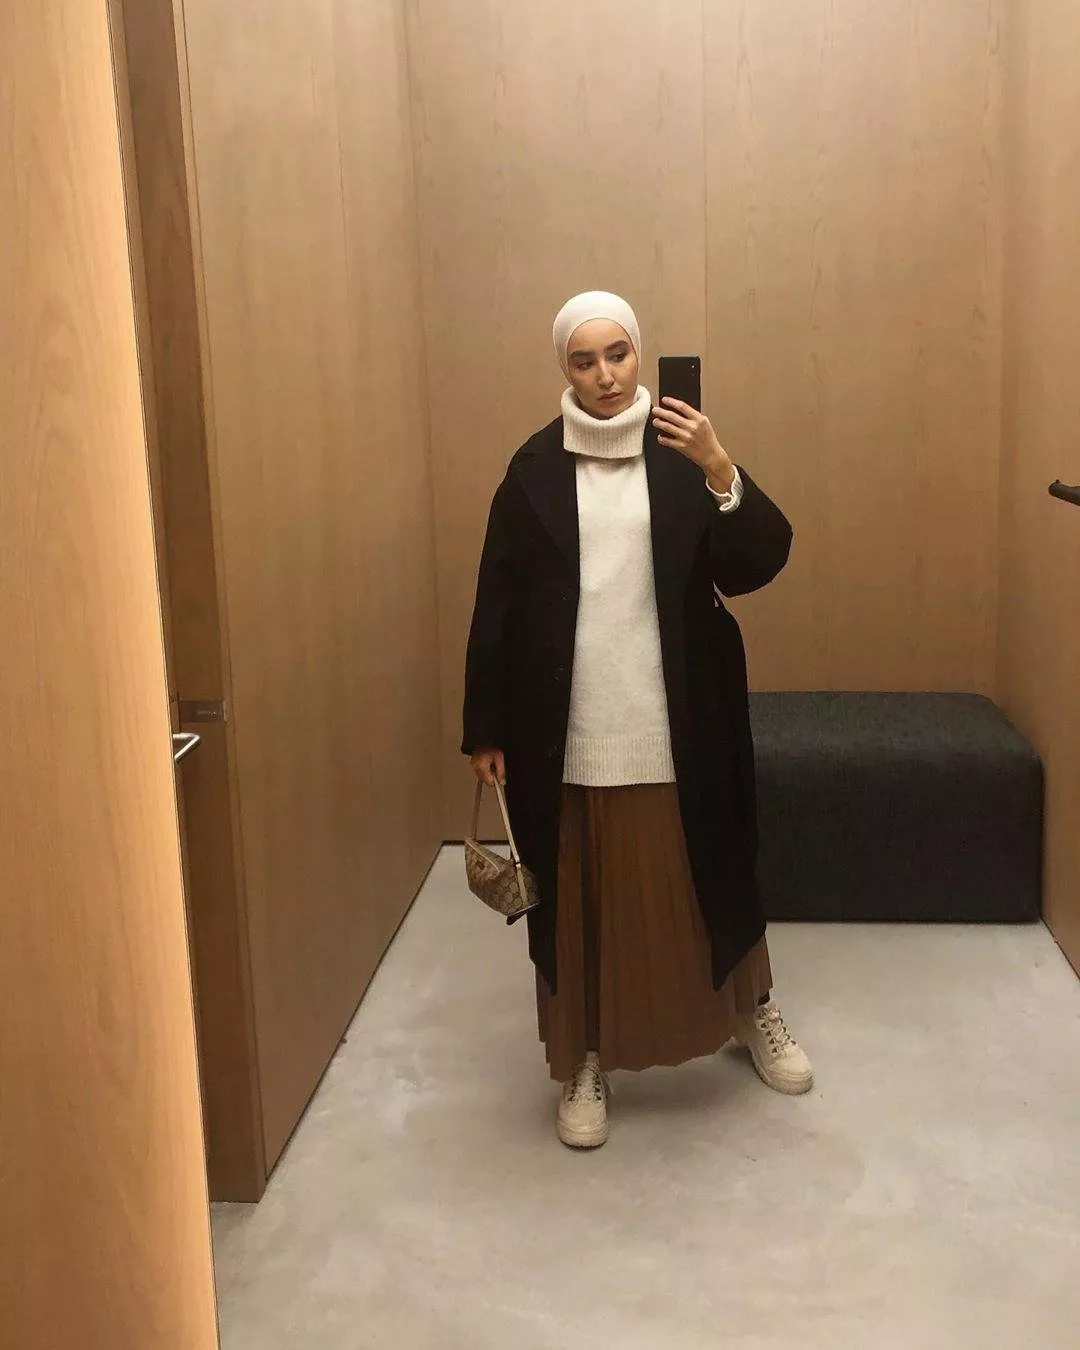 ملابس كاجوال شتوية 2019 للمرأة المحجبة: استوحي إطلالاتكِ من البلوغرز